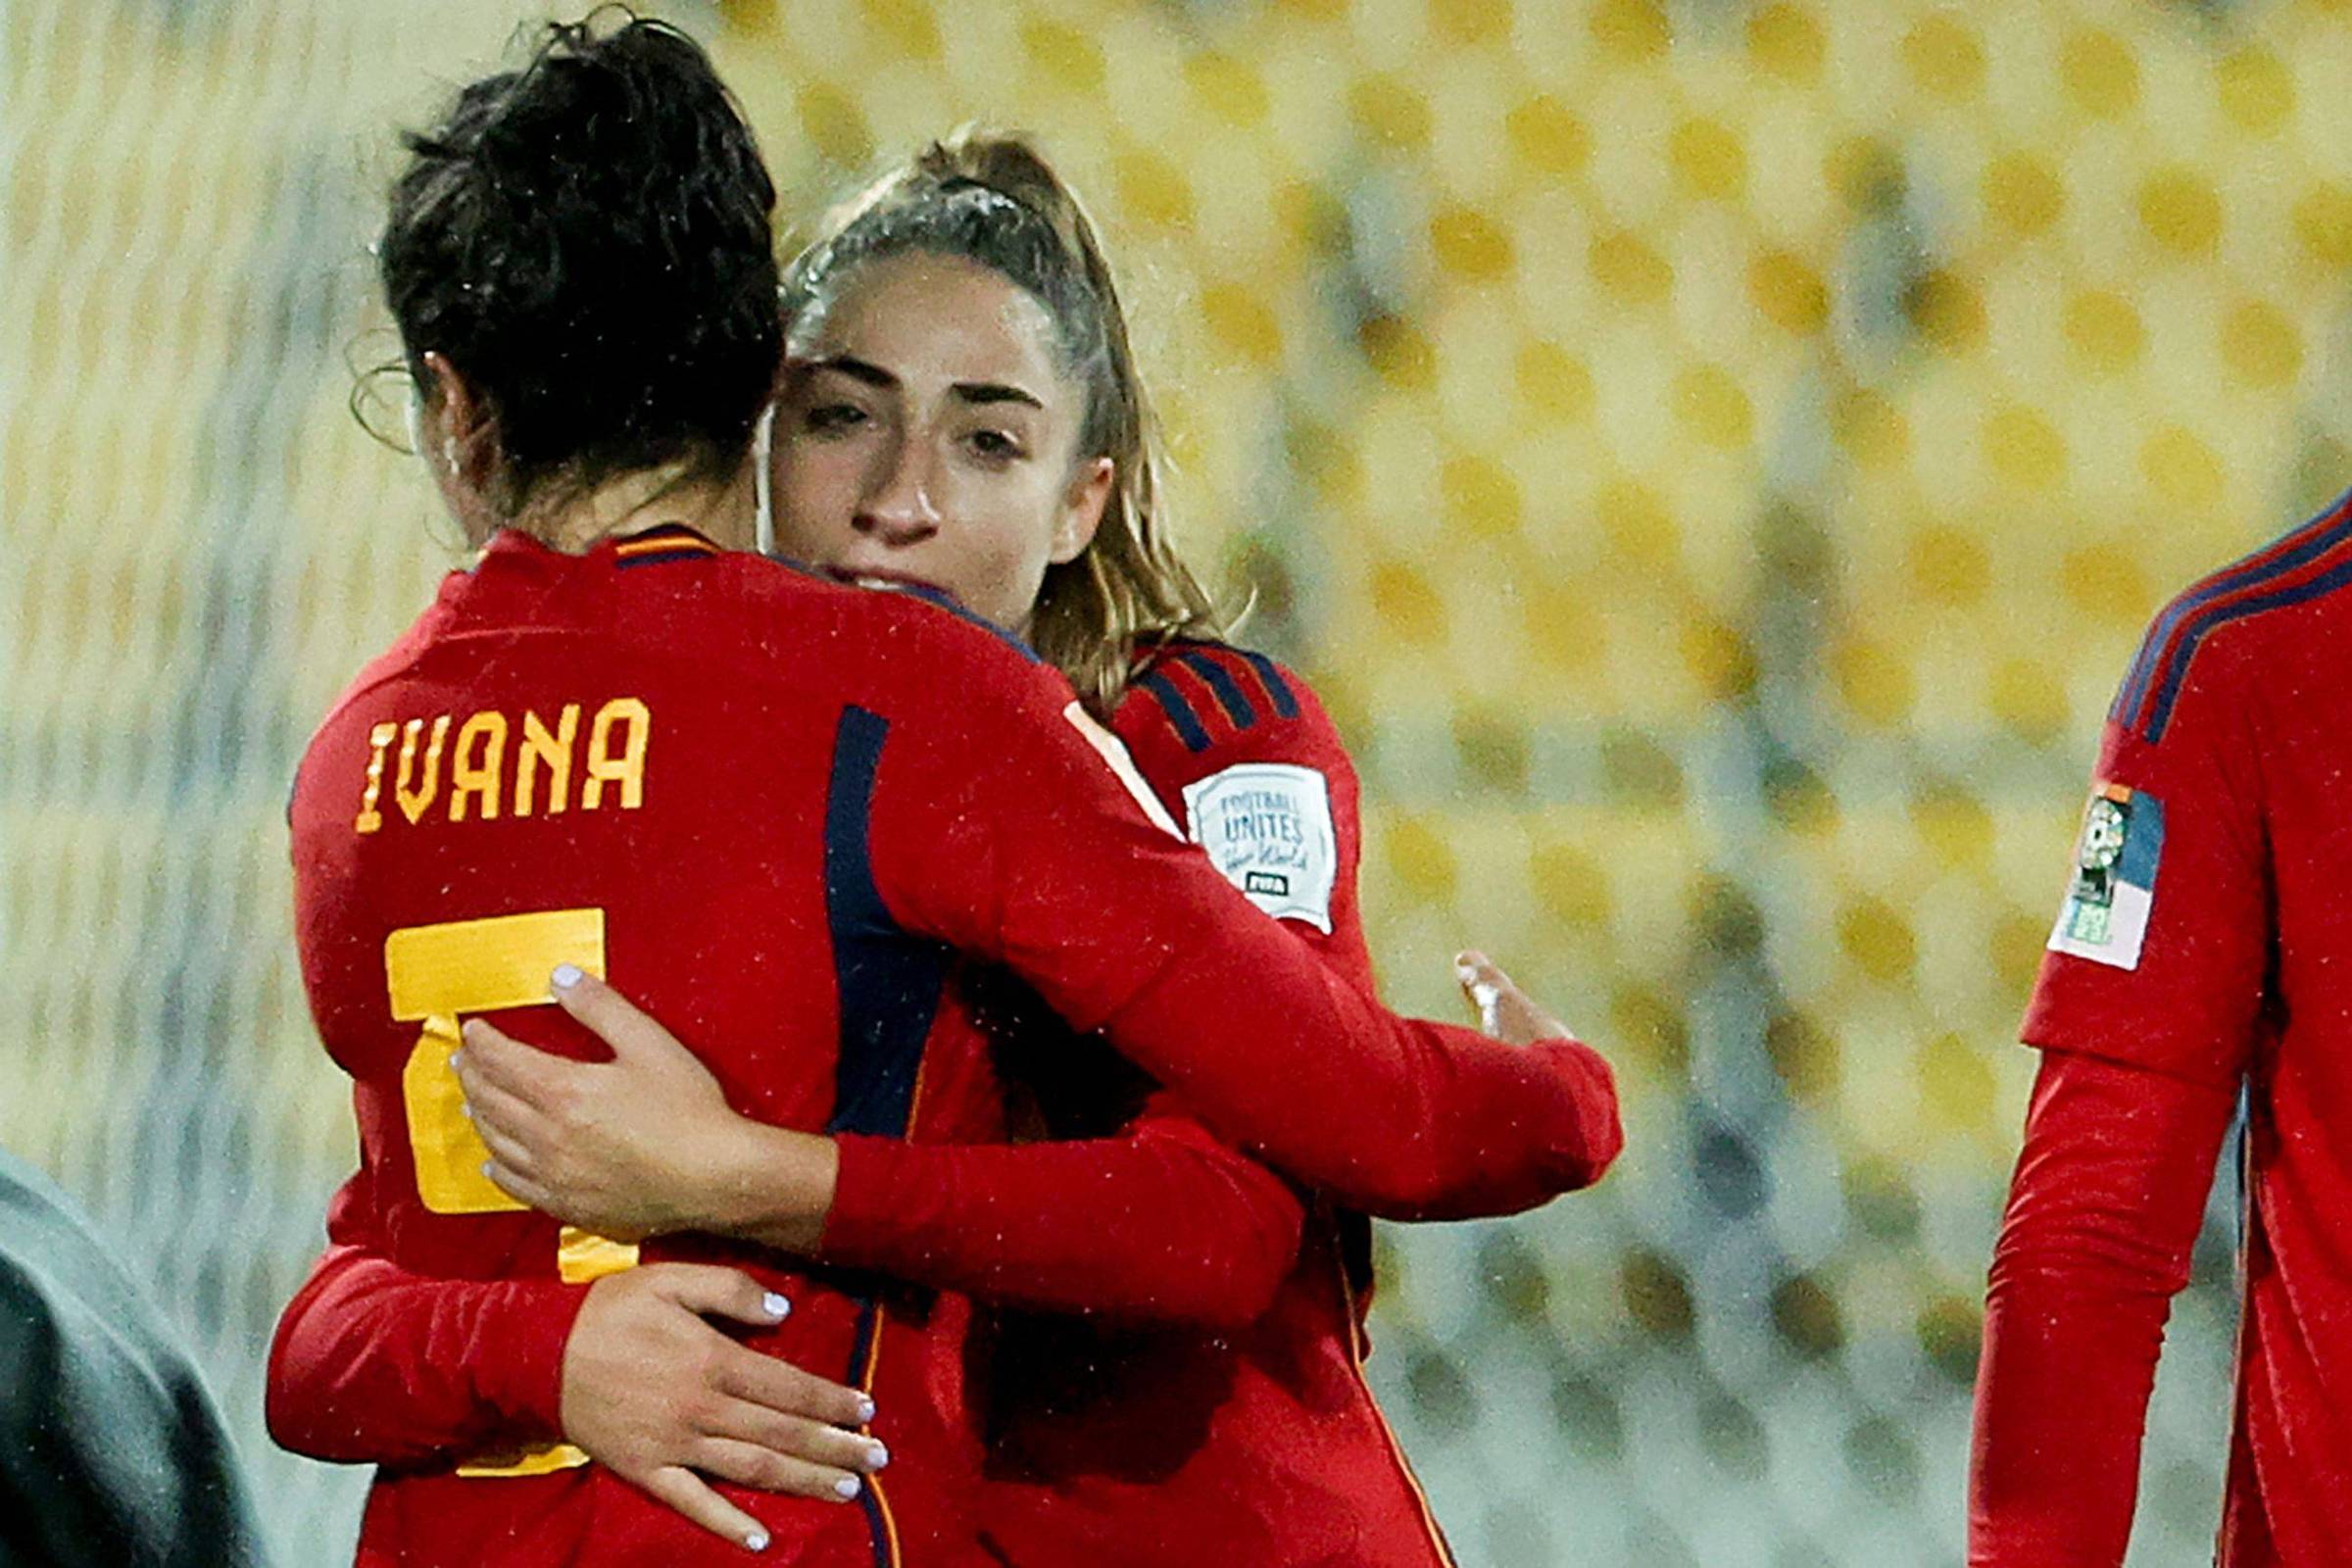 Spain defeat Costa Rica 3-0 in Women’s World Cup opener